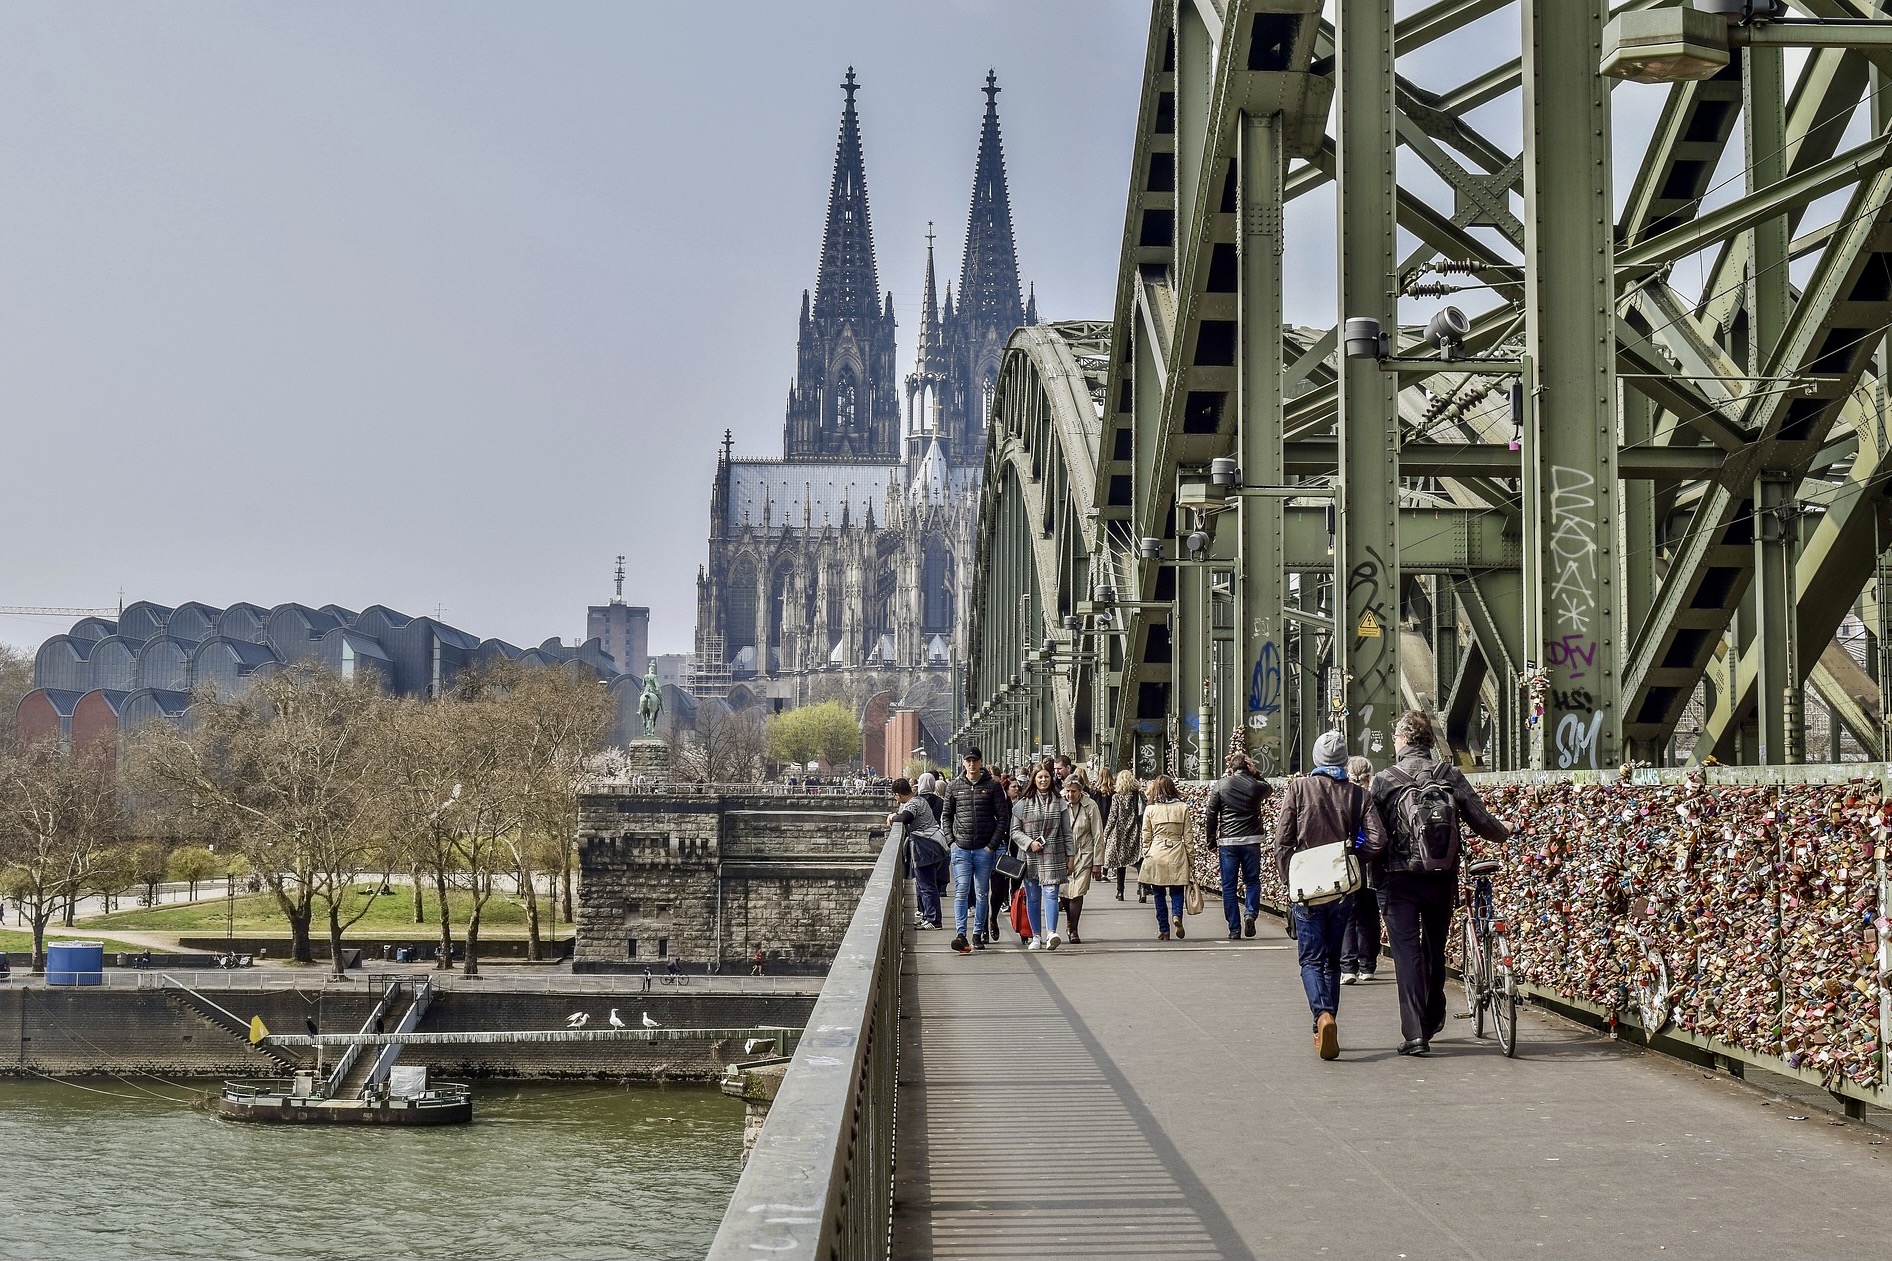 Zu den Köln Sehenswürdigkeiten gehört auch die Hohenzollernbrücke